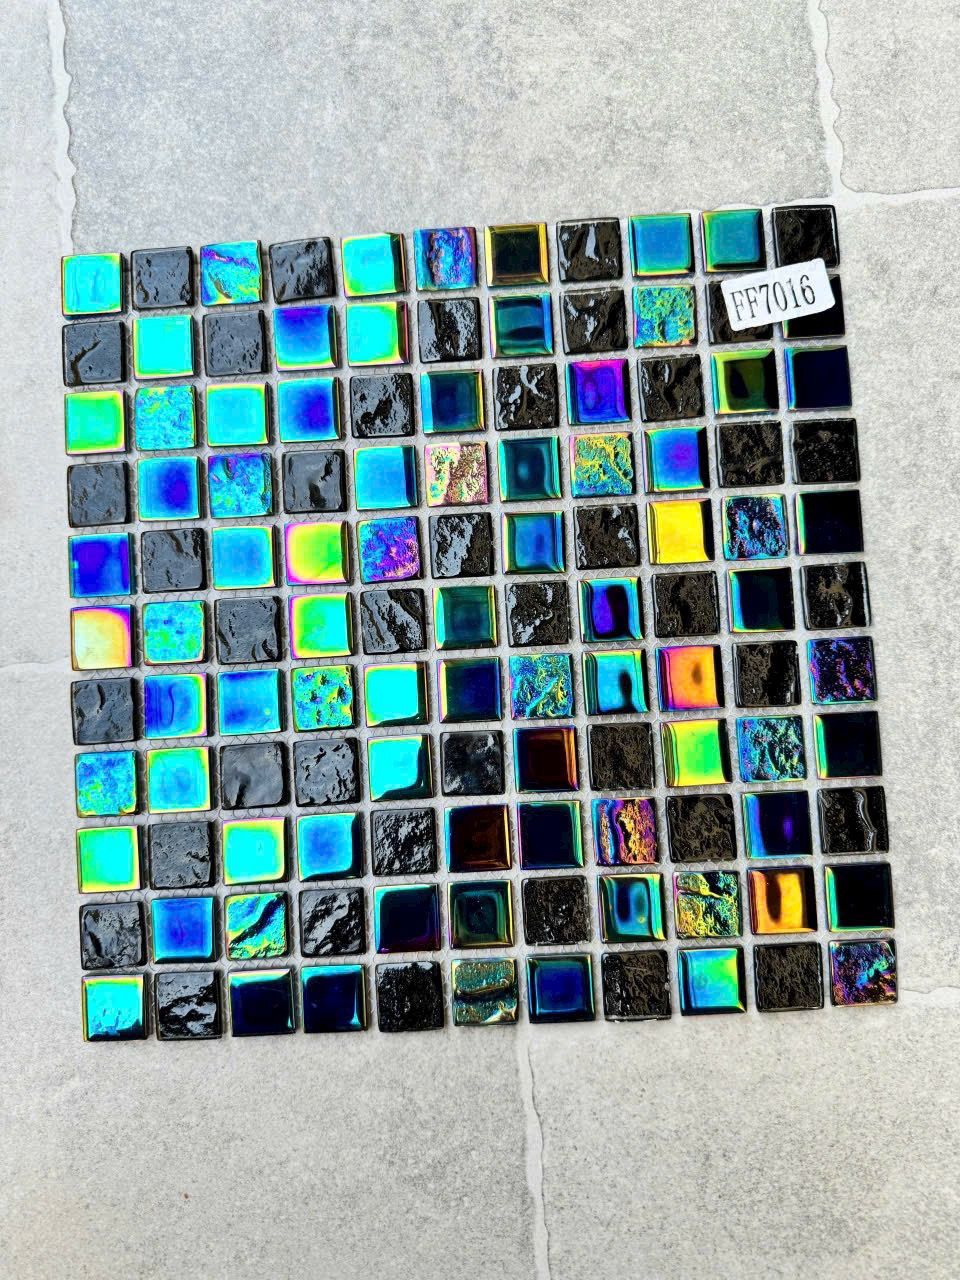 gach mosaic thuy tinh ff7016